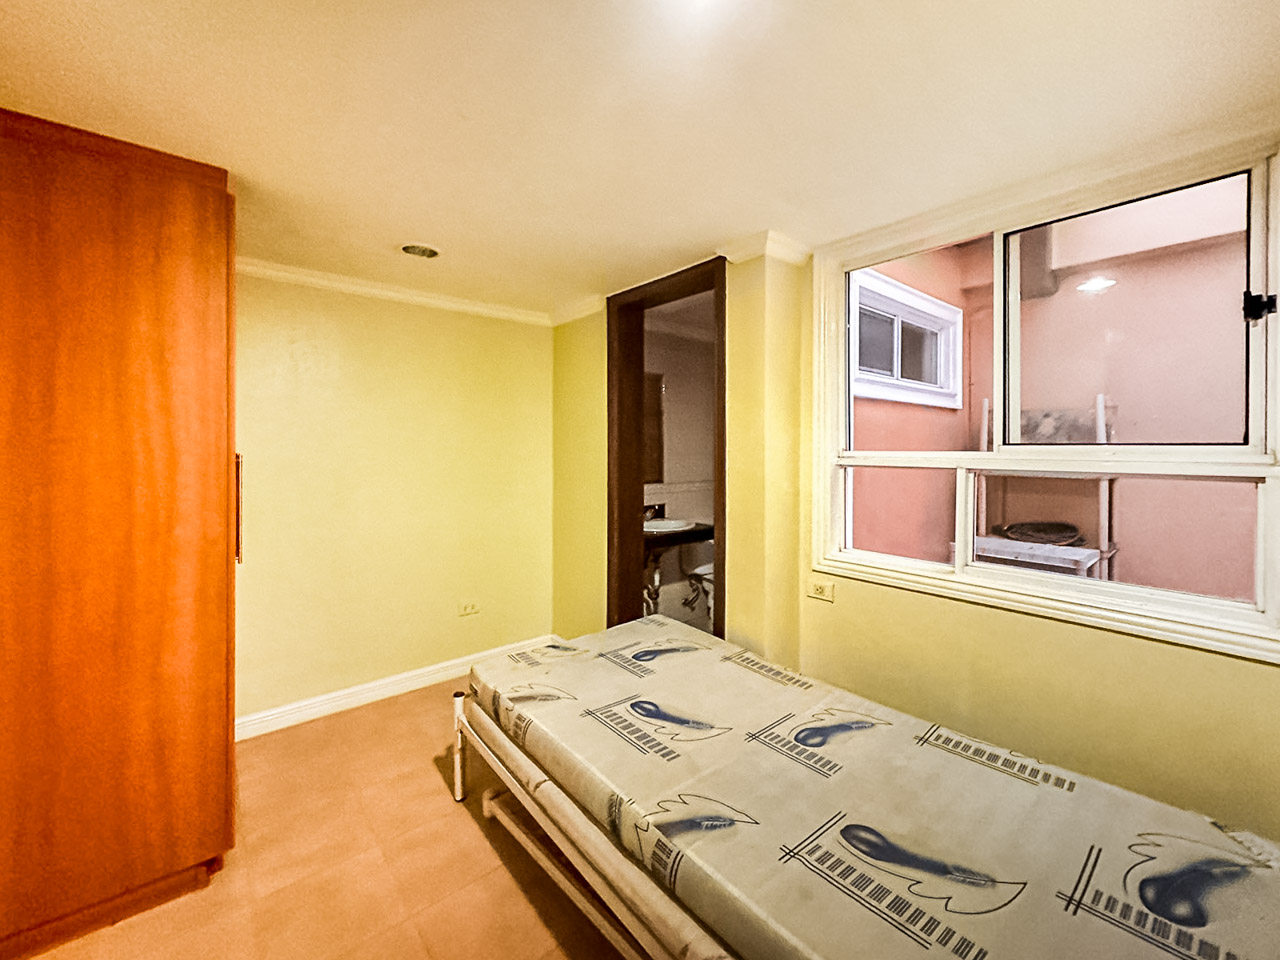 SRBOEP1 3 Bedrooms House for Sale in Lahug Cebu - 20